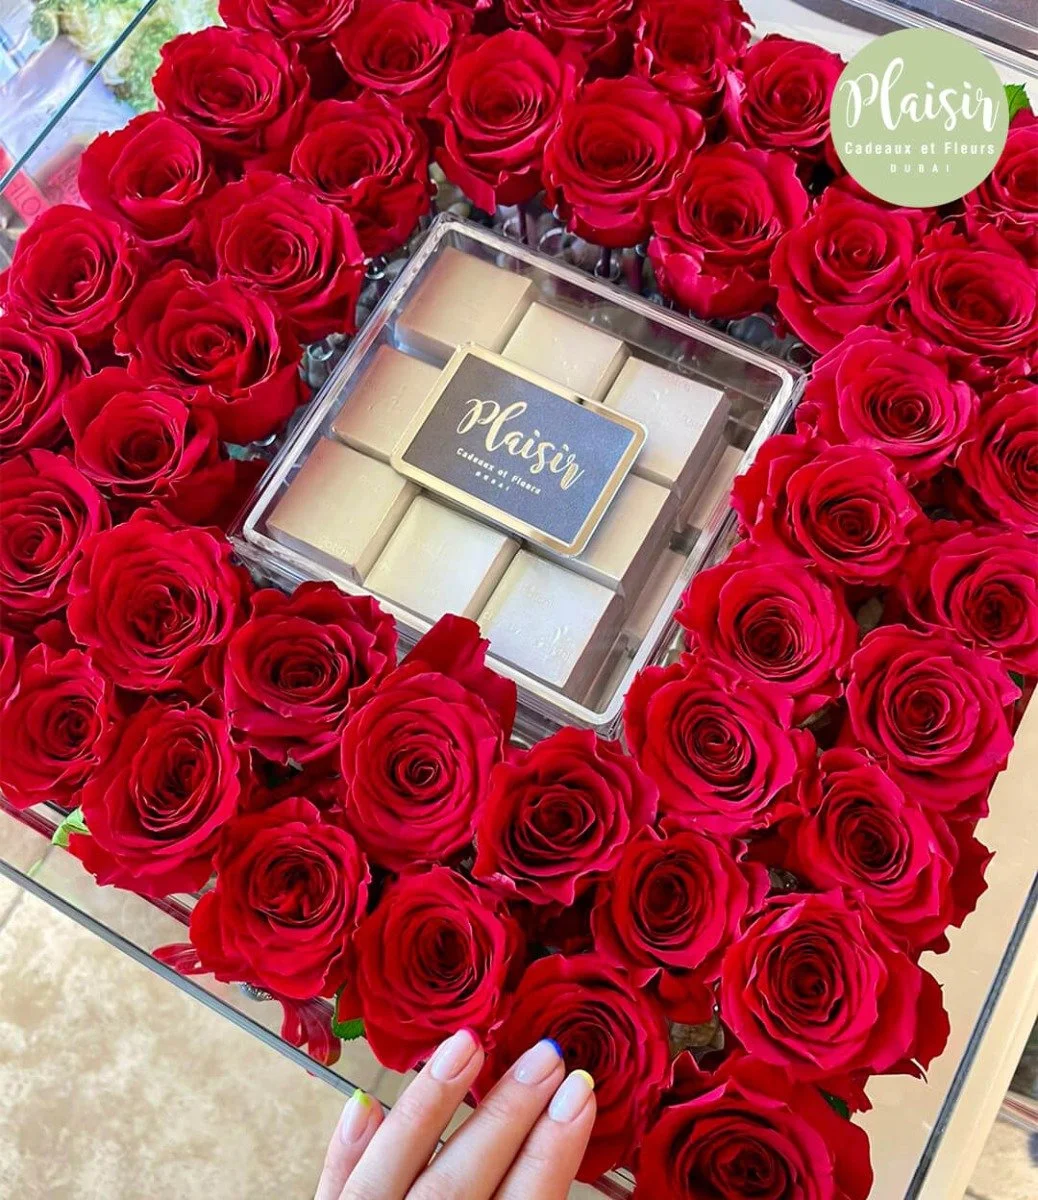 صندوق أكريليك من الشوكولاتة وزهور حمراء منعشة من بليزير